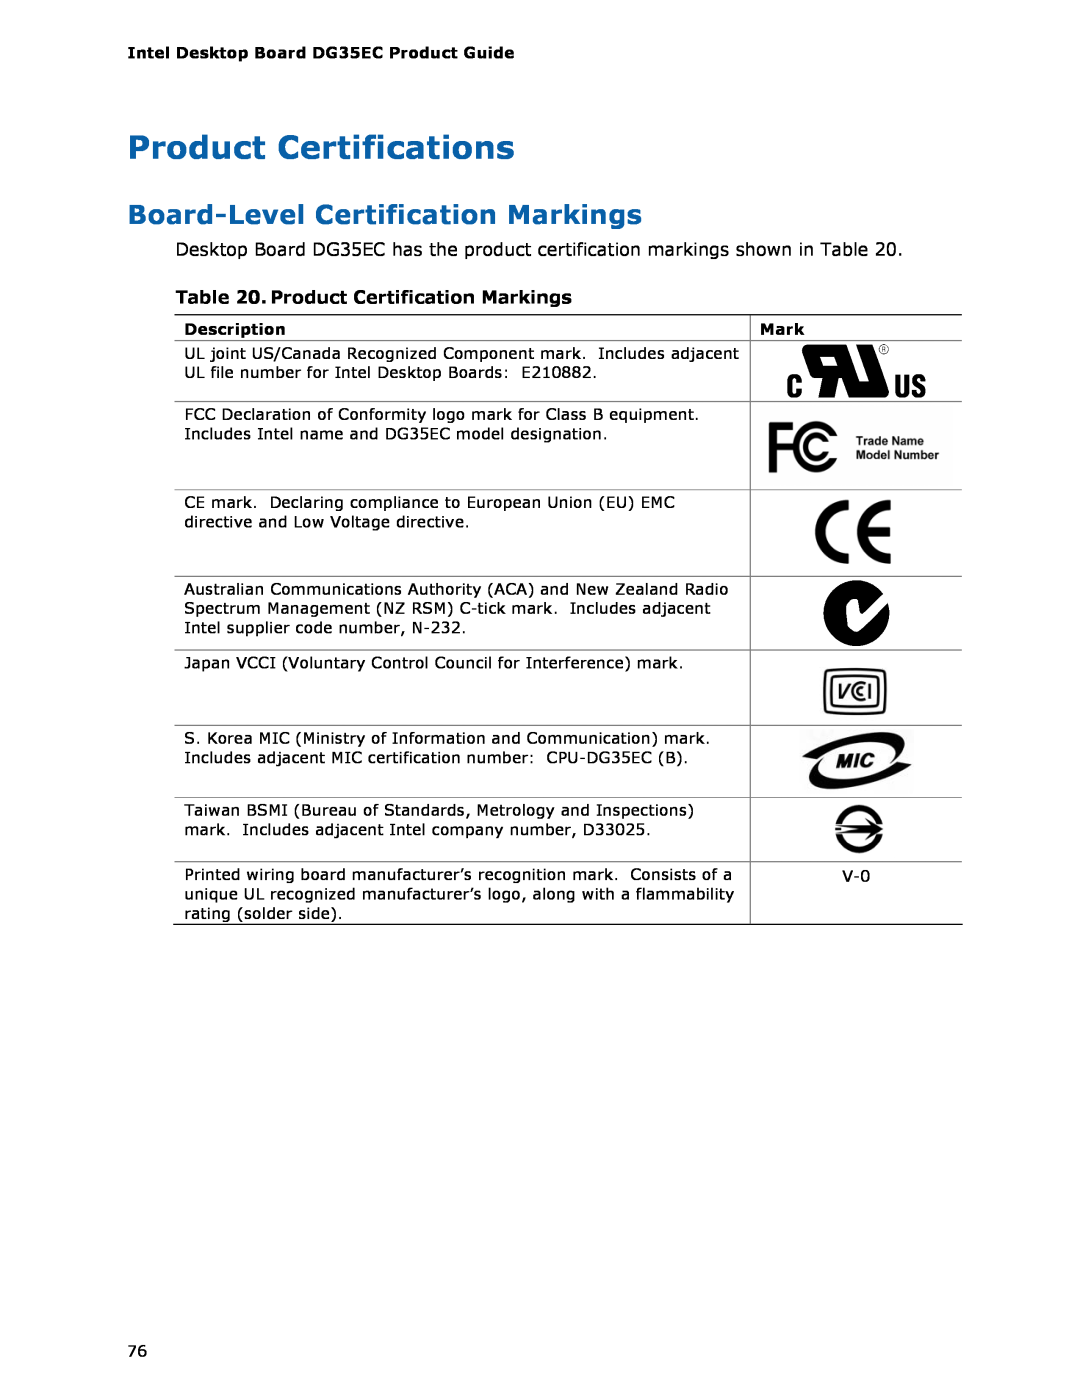 Intel Intel Desktop Board manual Product Certifications, Board-Level Certification Markings, Product Certification Markings 